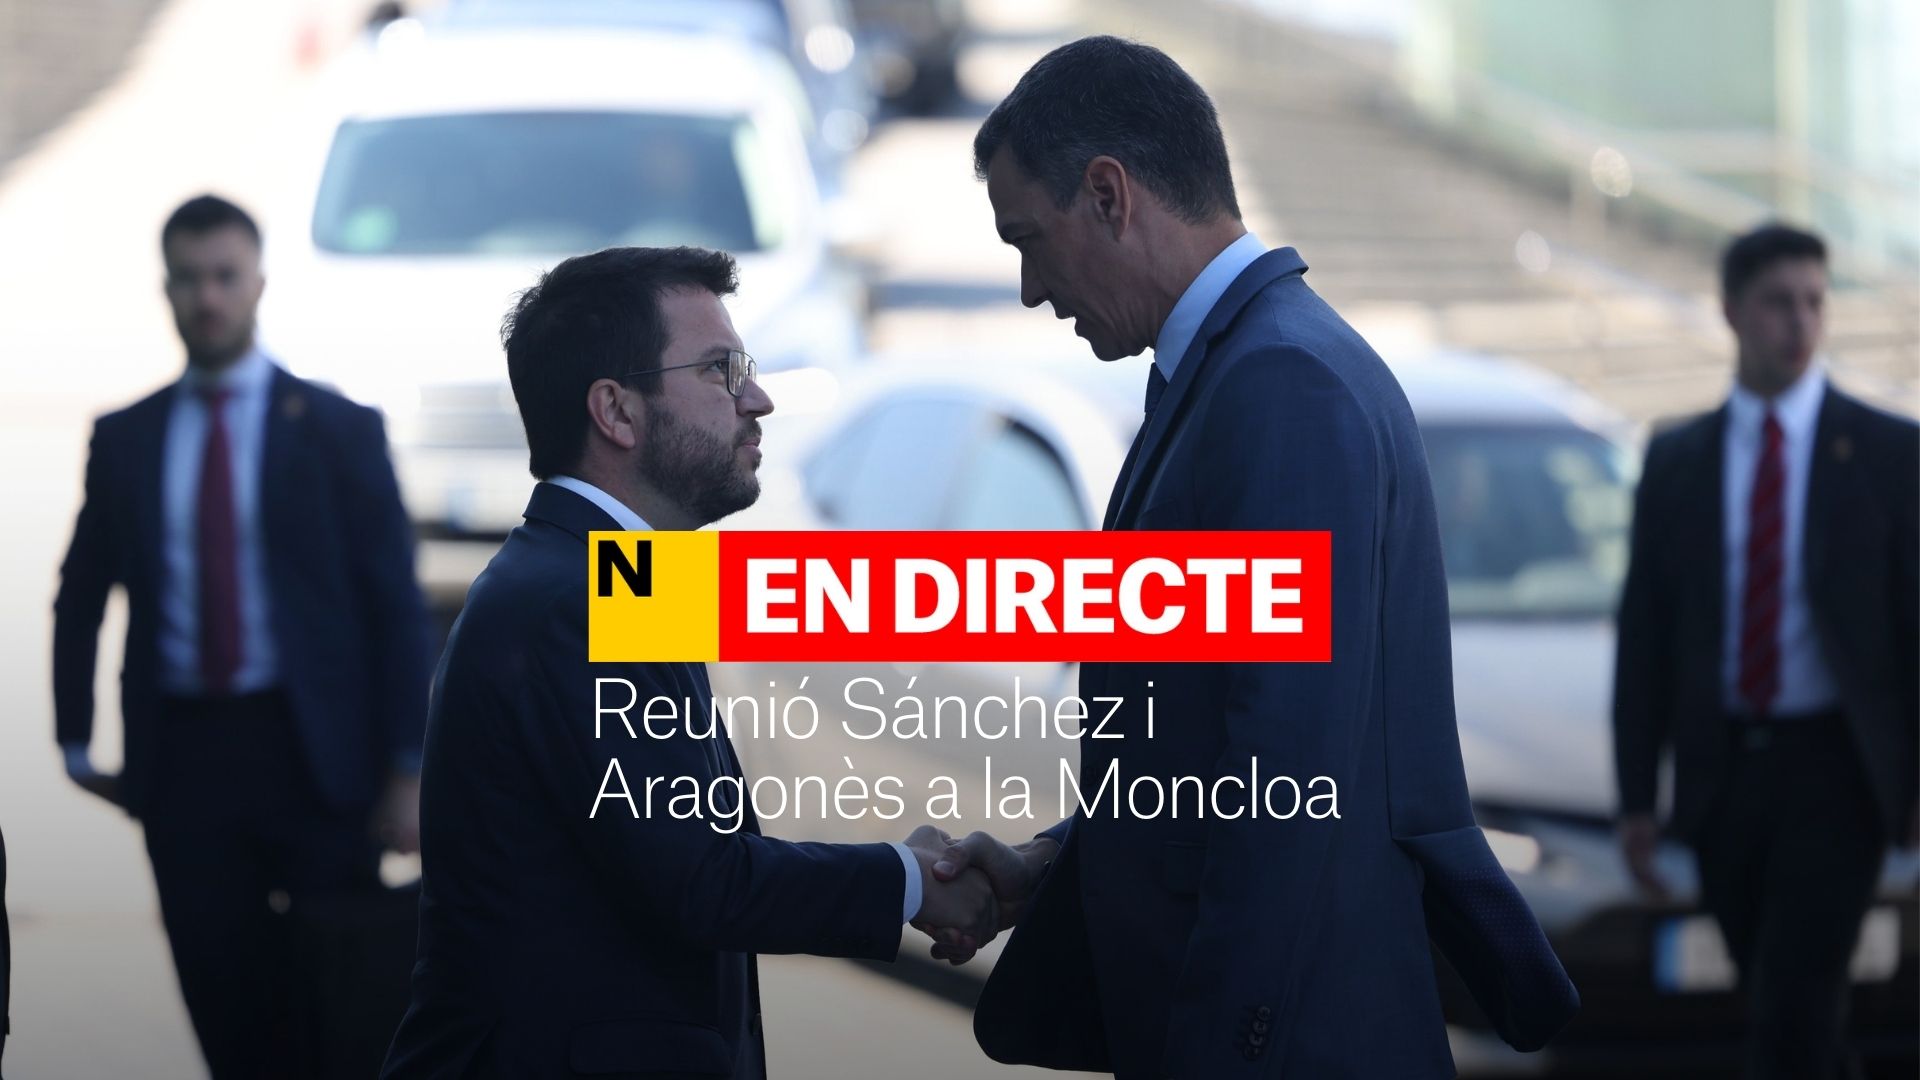 Reunión de Sánchez y Aragonès en la Moncloa: comparece el presidente Pere Aragonès | DIRECTO